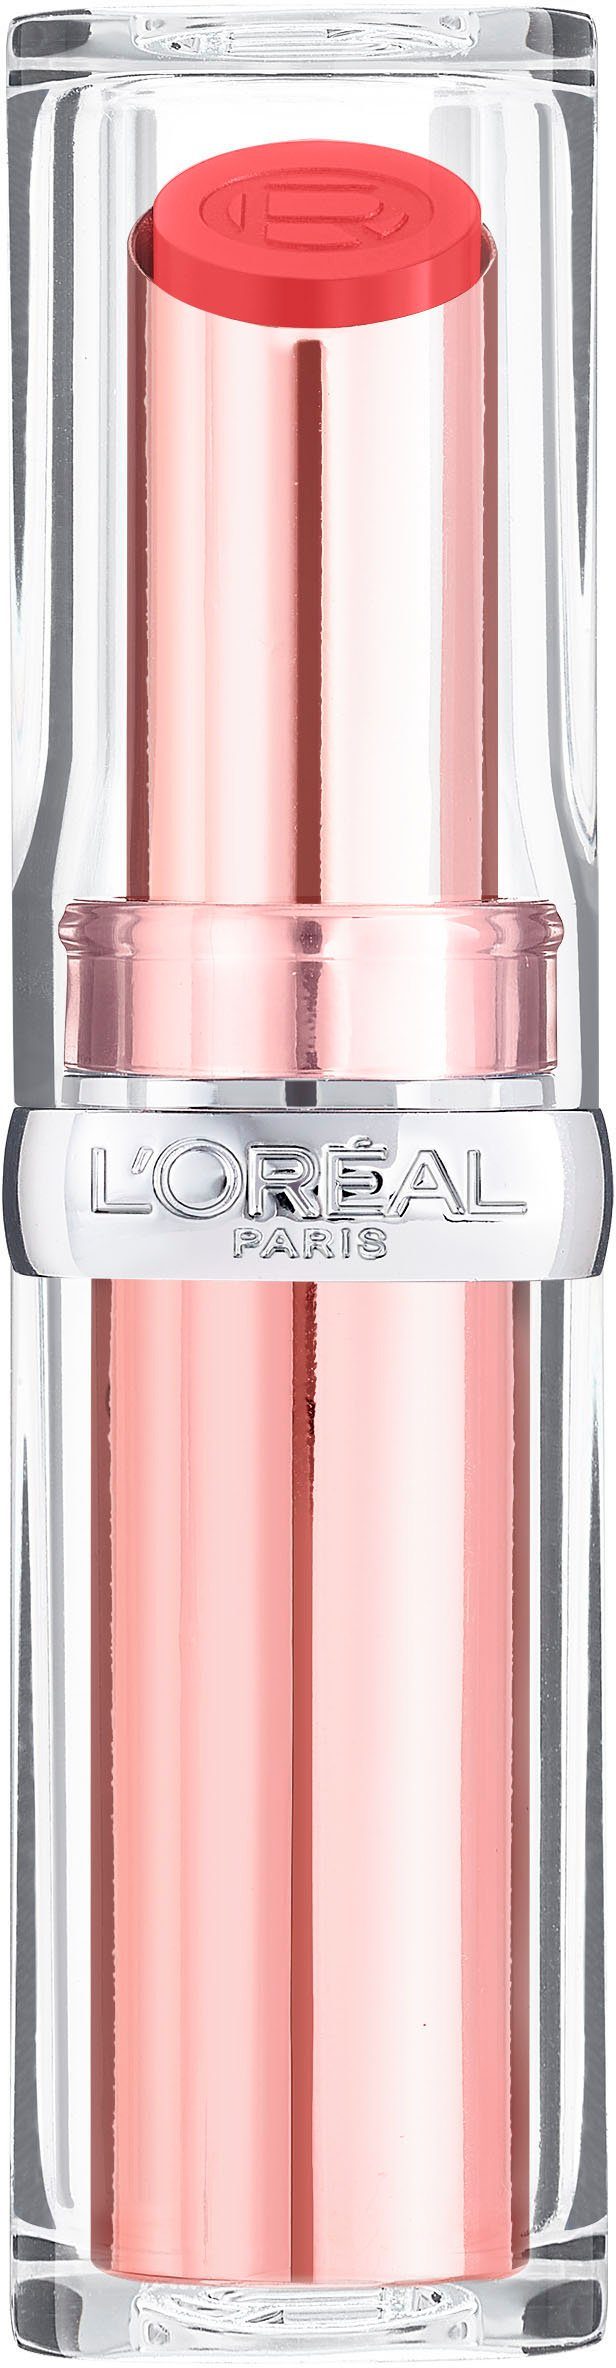 L'ORÉAL PARIS Lippenstift Color Riche Glow Paradise, Für Lippen so gesund  aussehend, dass sie strahlen